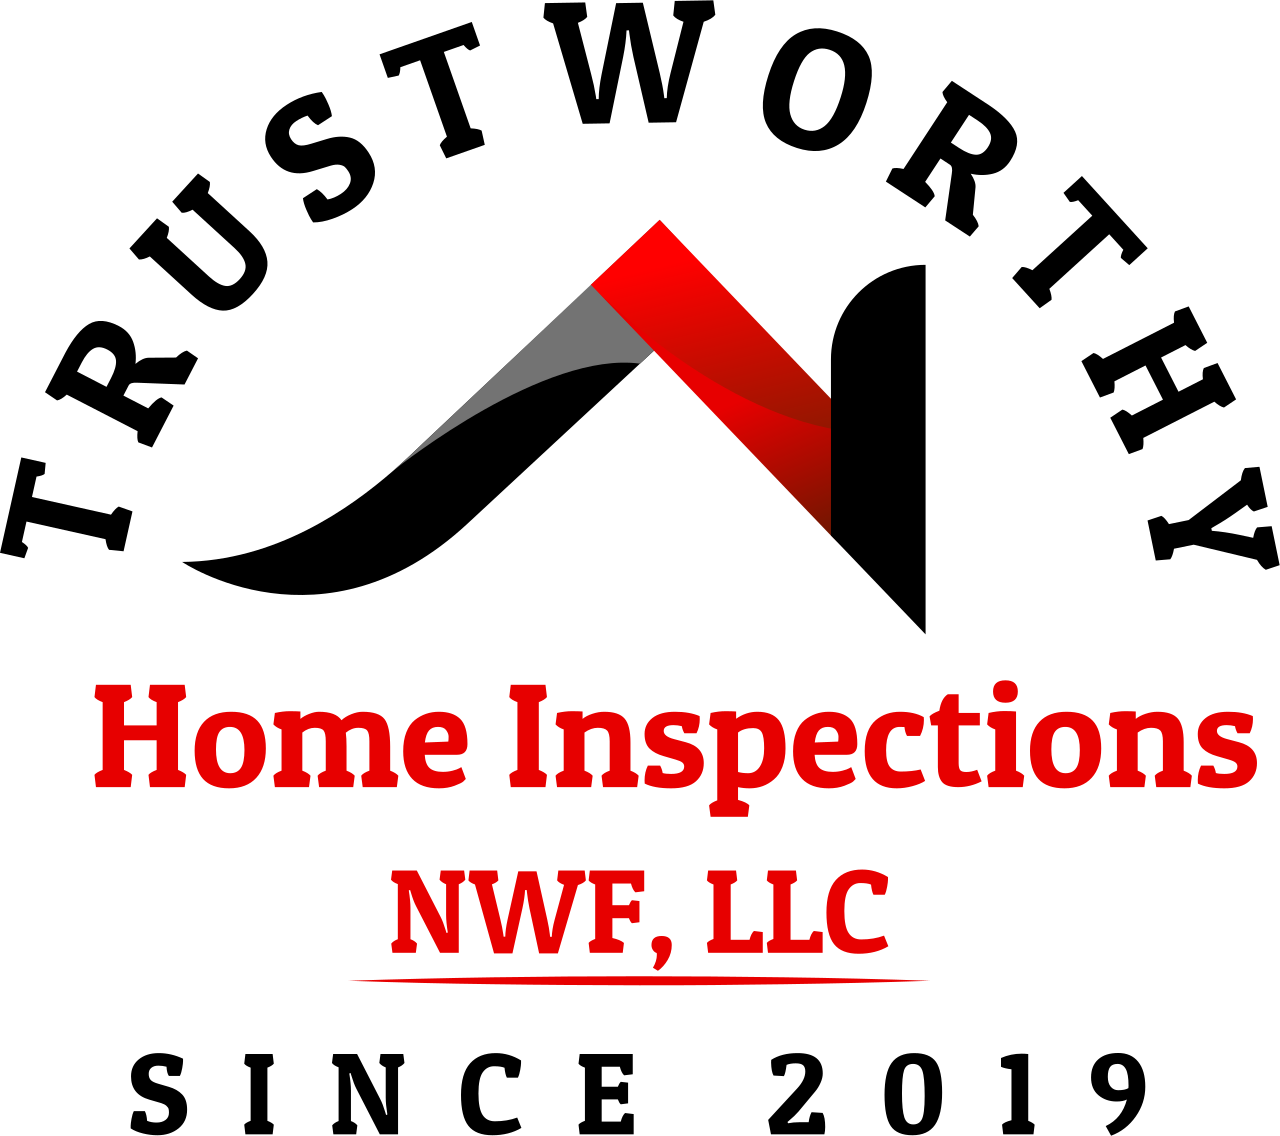 trustworthy home inspections  nwf llc's logo